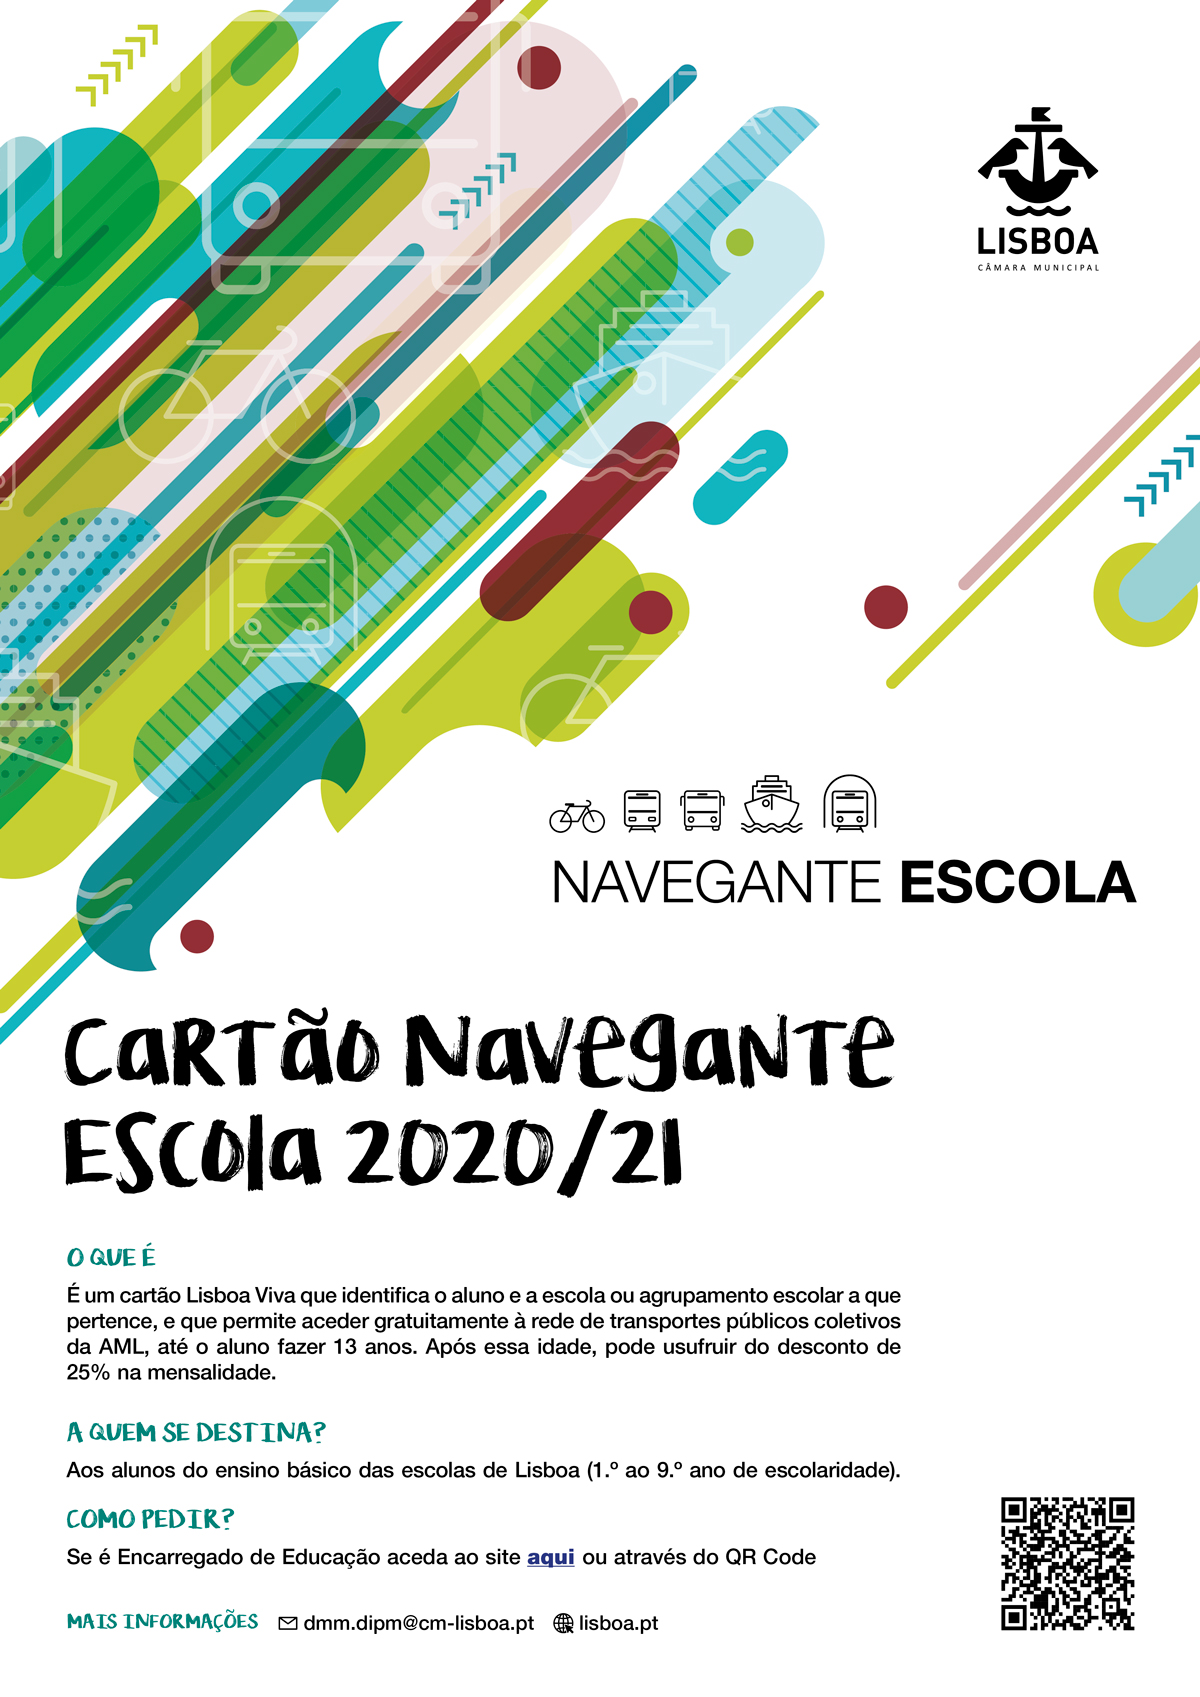 NaveganteEscola A3 2020 21